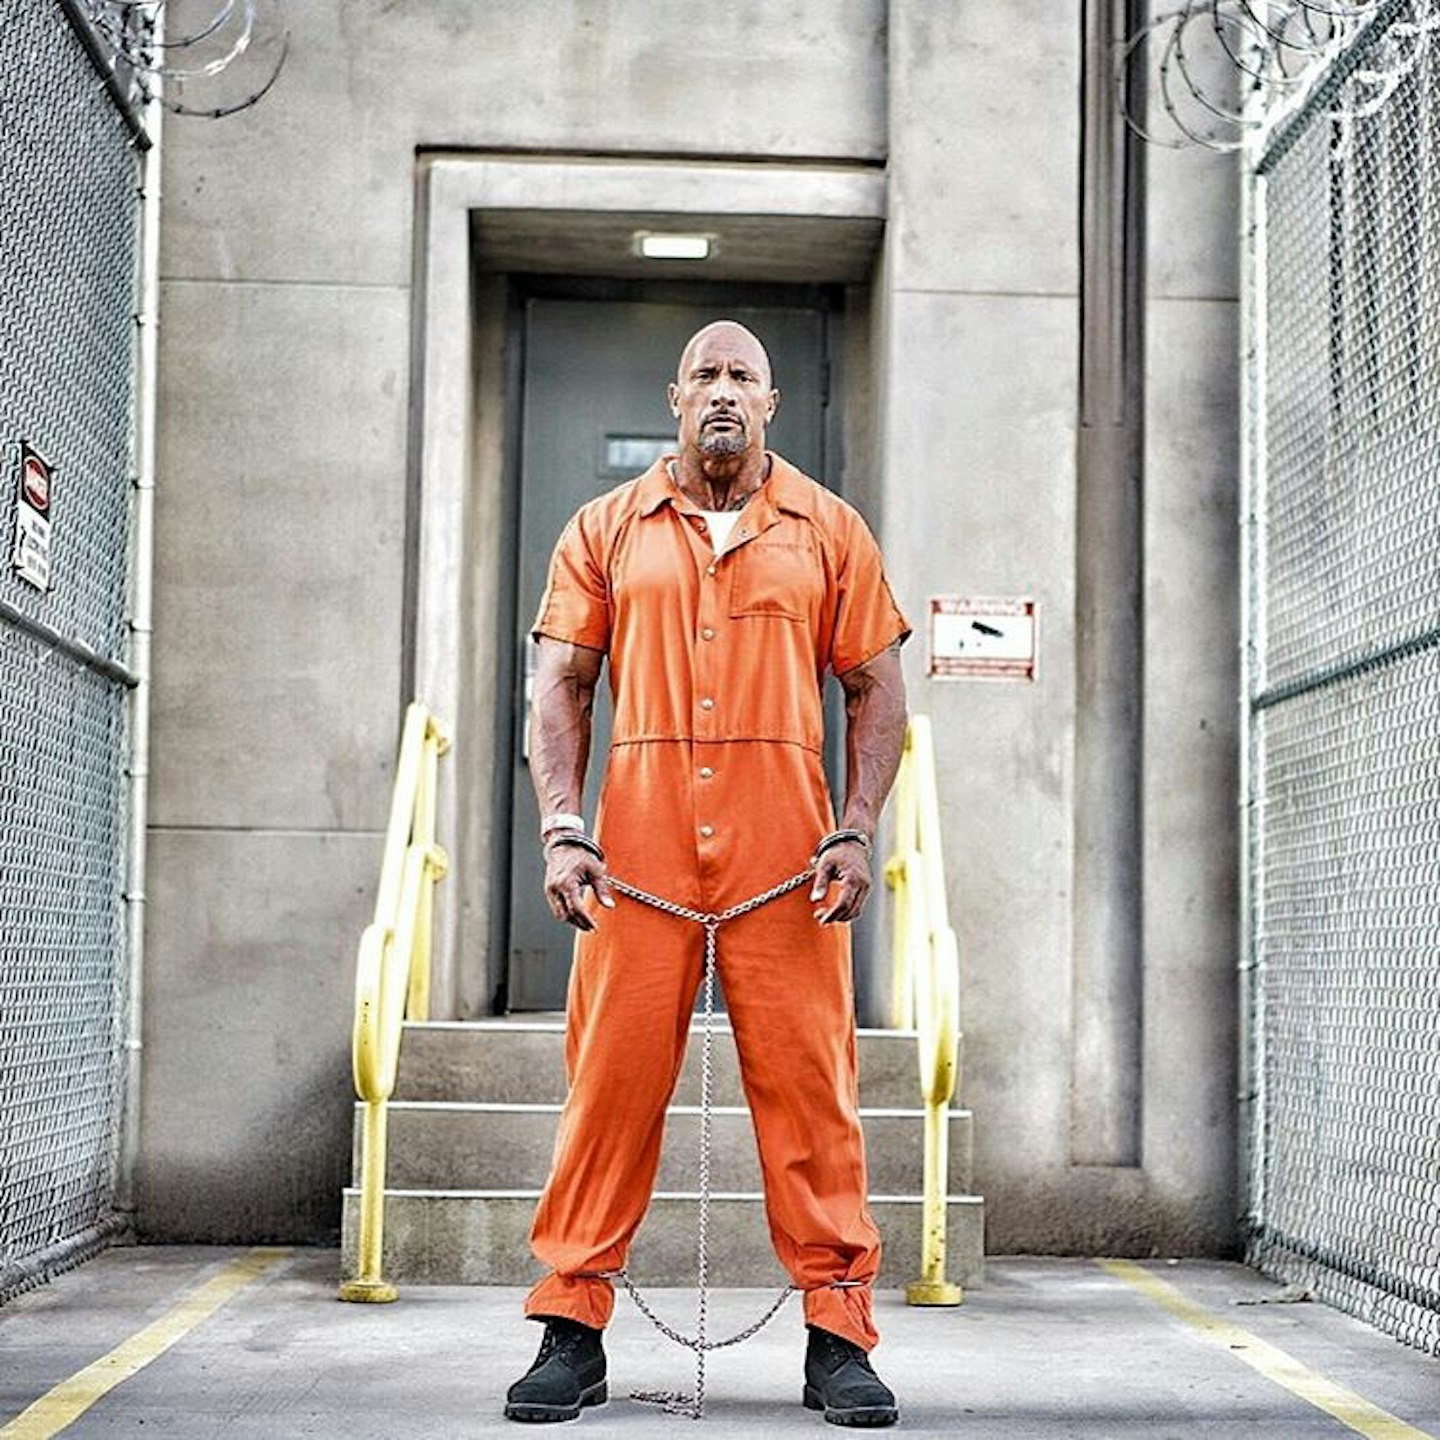 Dwayne Johnson as Luke Hobbs in Fast 8 – prison gear